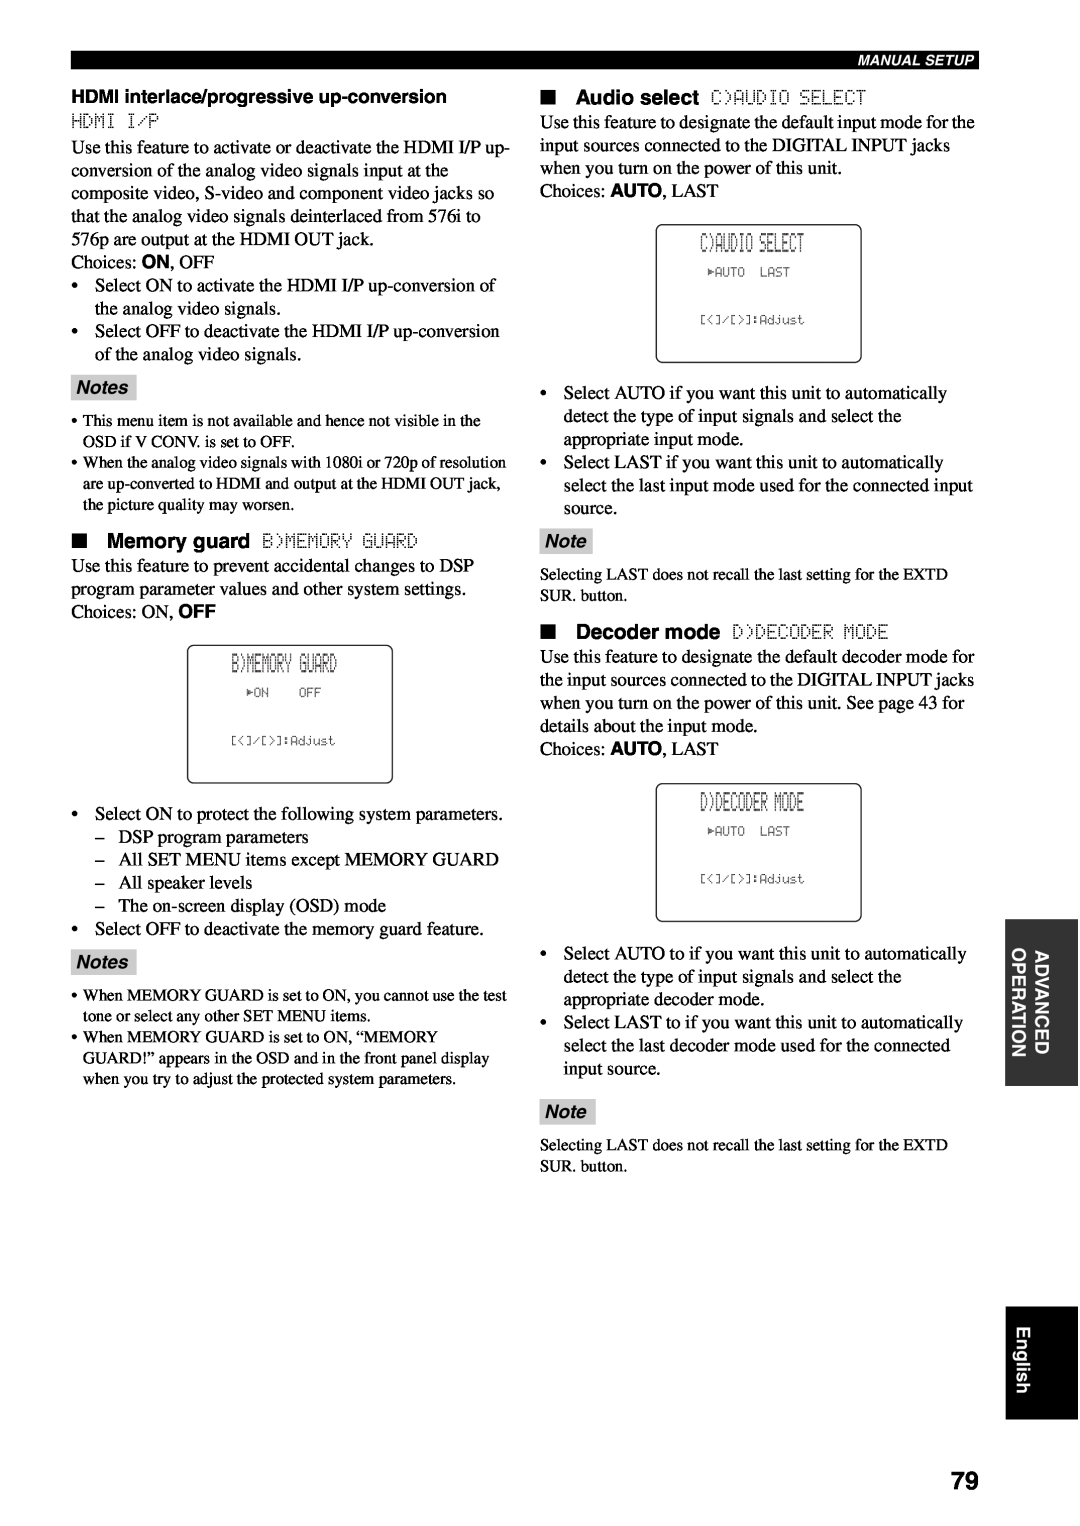 Yamaha RX-V1600 owner manual Bmemory Guard, Caudio Select, Ddecoder Mode, Notes 